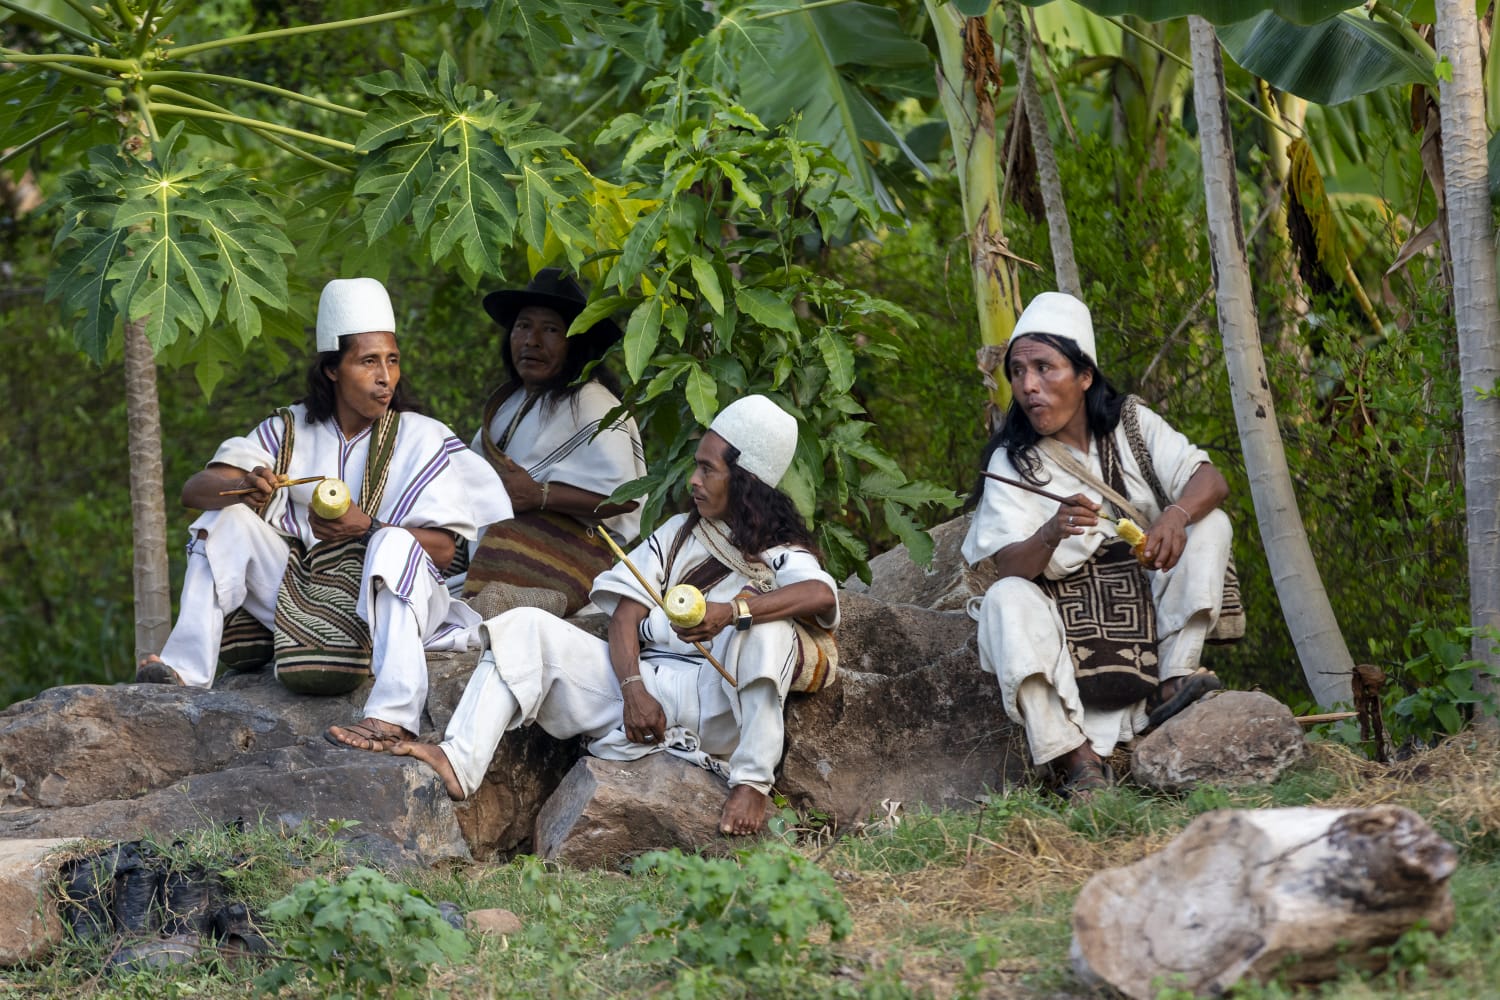 ‘Tejido de paz’ es una iniciativa del SENA con el apoyo de la OIT que propone la hoja de coca para usos como el abono de cultivo